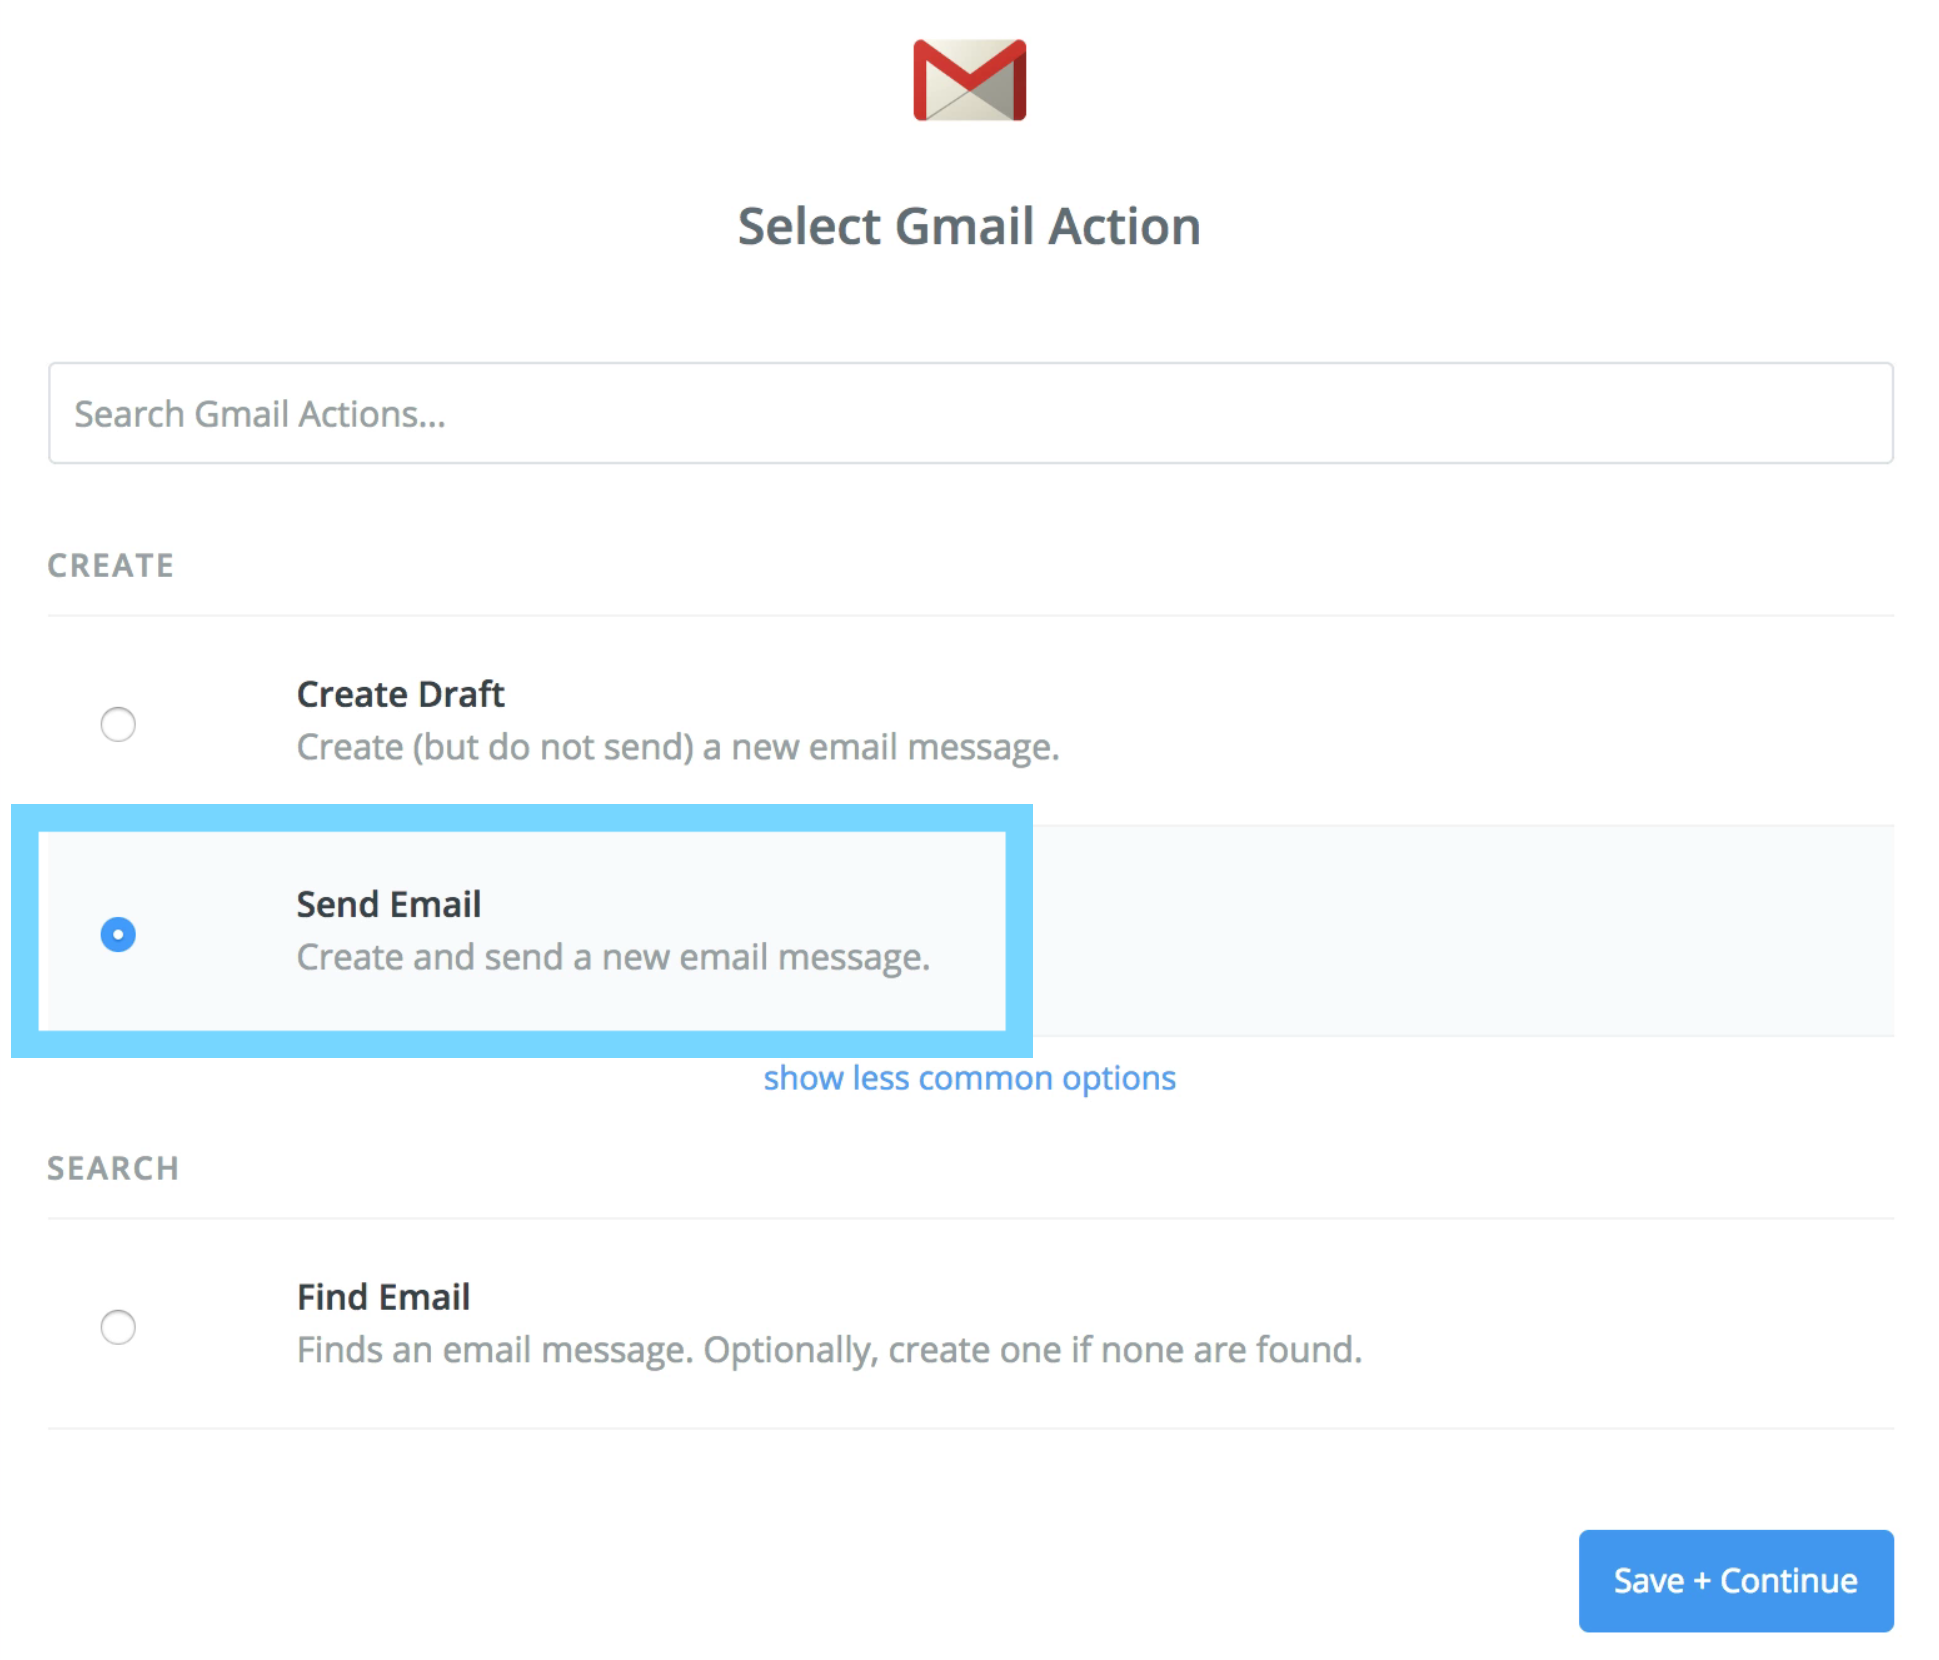 「Select Gmail Action」でアクションを選択する